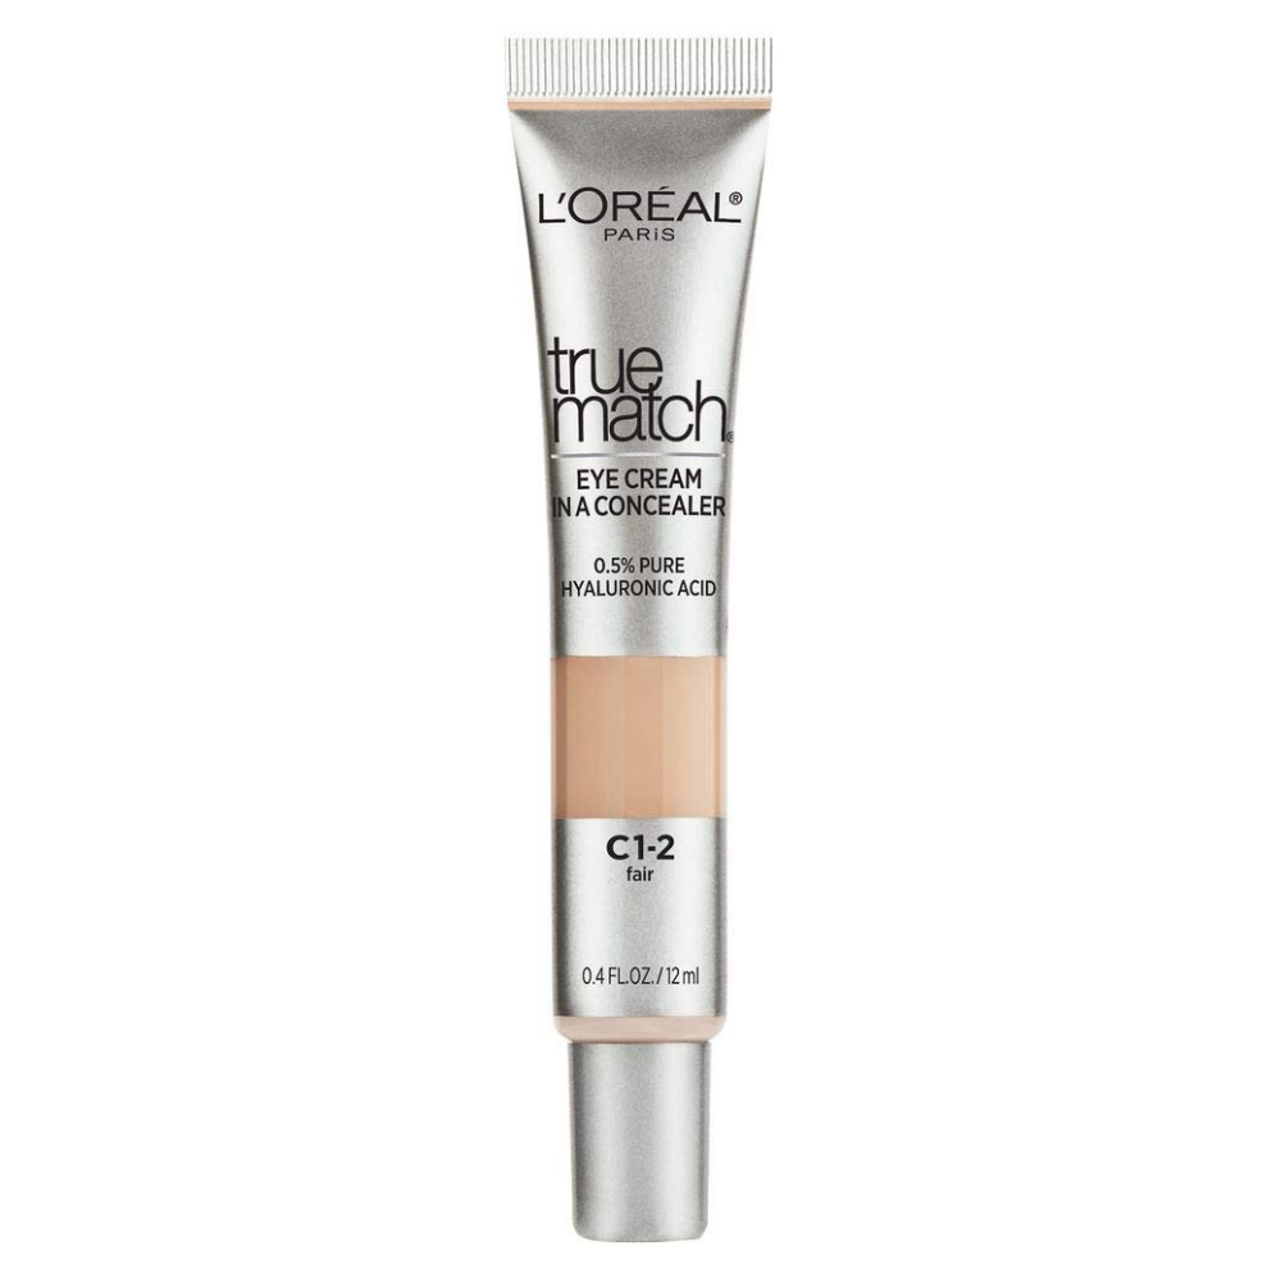 L'oreal True Match Eye Cream in a Concealer, Medium C5-6 - 0.4 fl oz